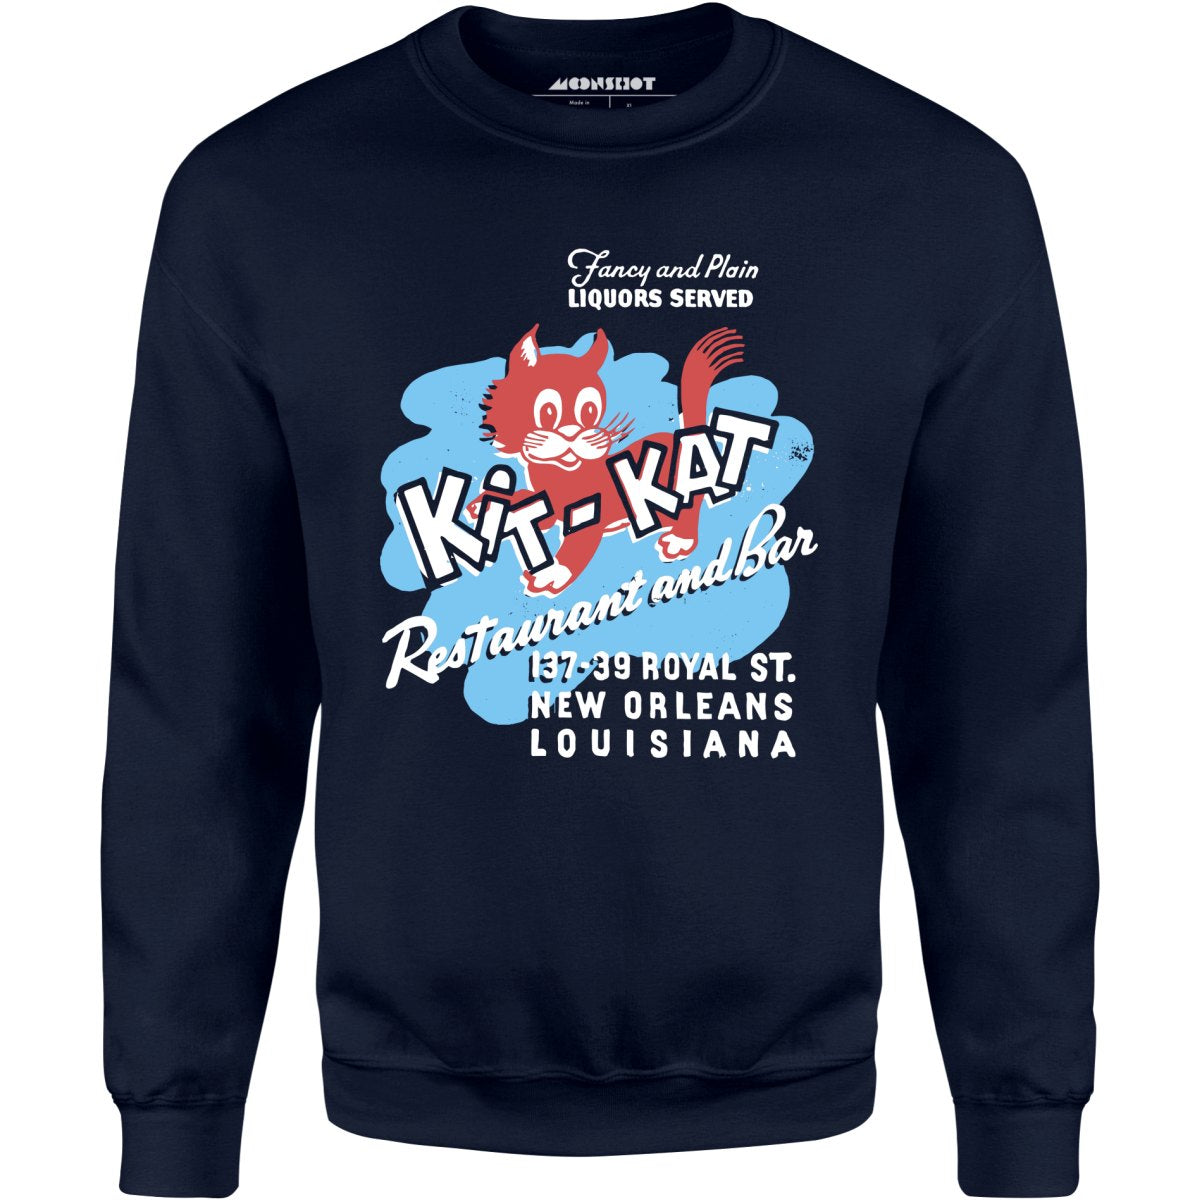 Kit-Kat - New Orleans, LA - Vintage Restaurant - Unisex Sweatshirt